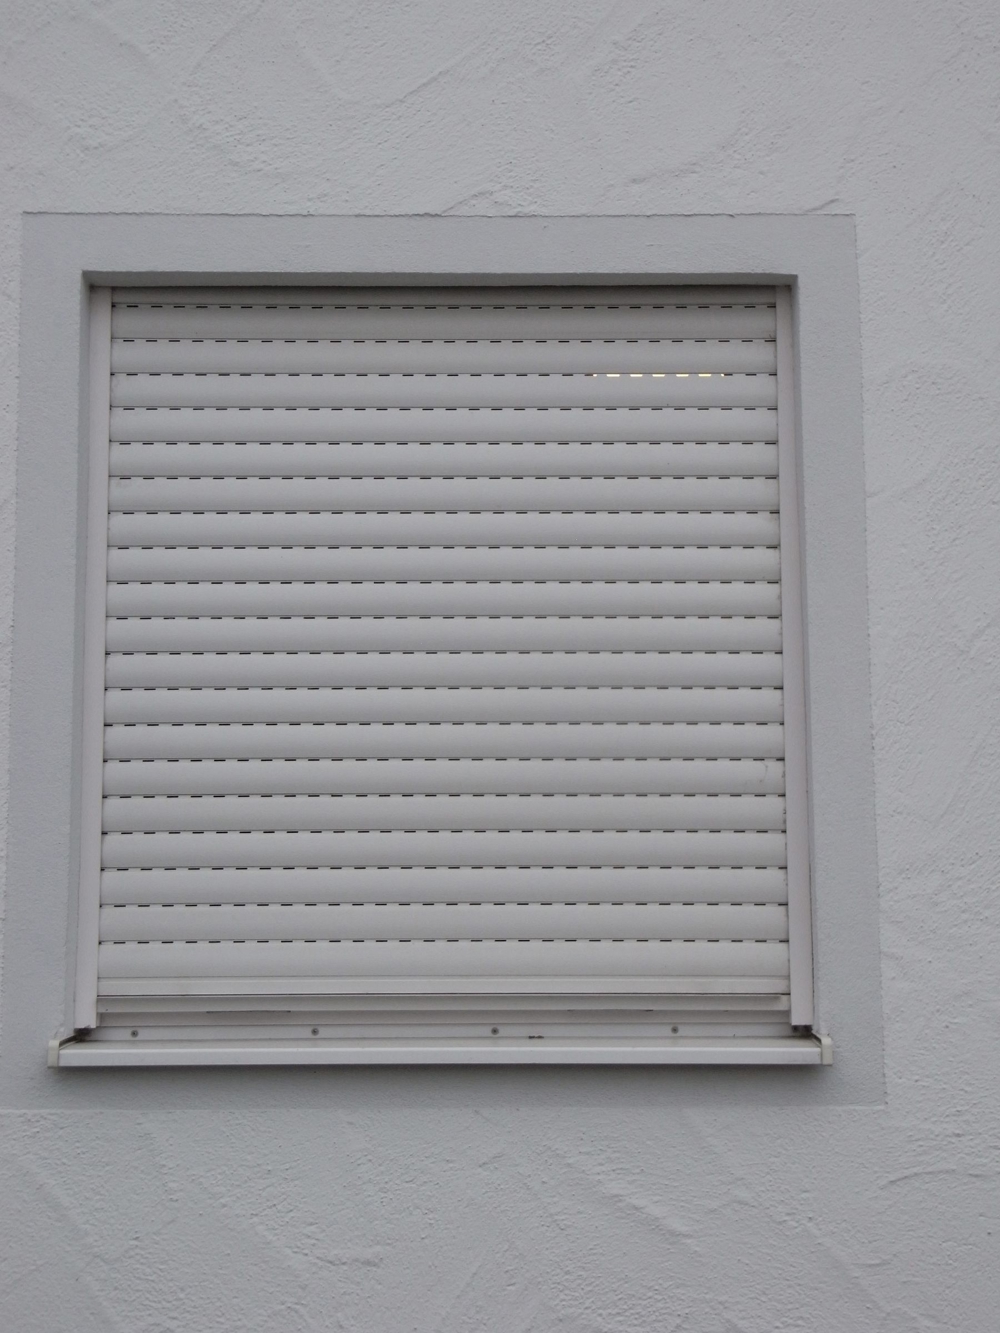 Rolläden PVC weiss hell glatt guter Zustnd Rollladen Kunststoff Lamelle Tür Hausbau Renovierung grau